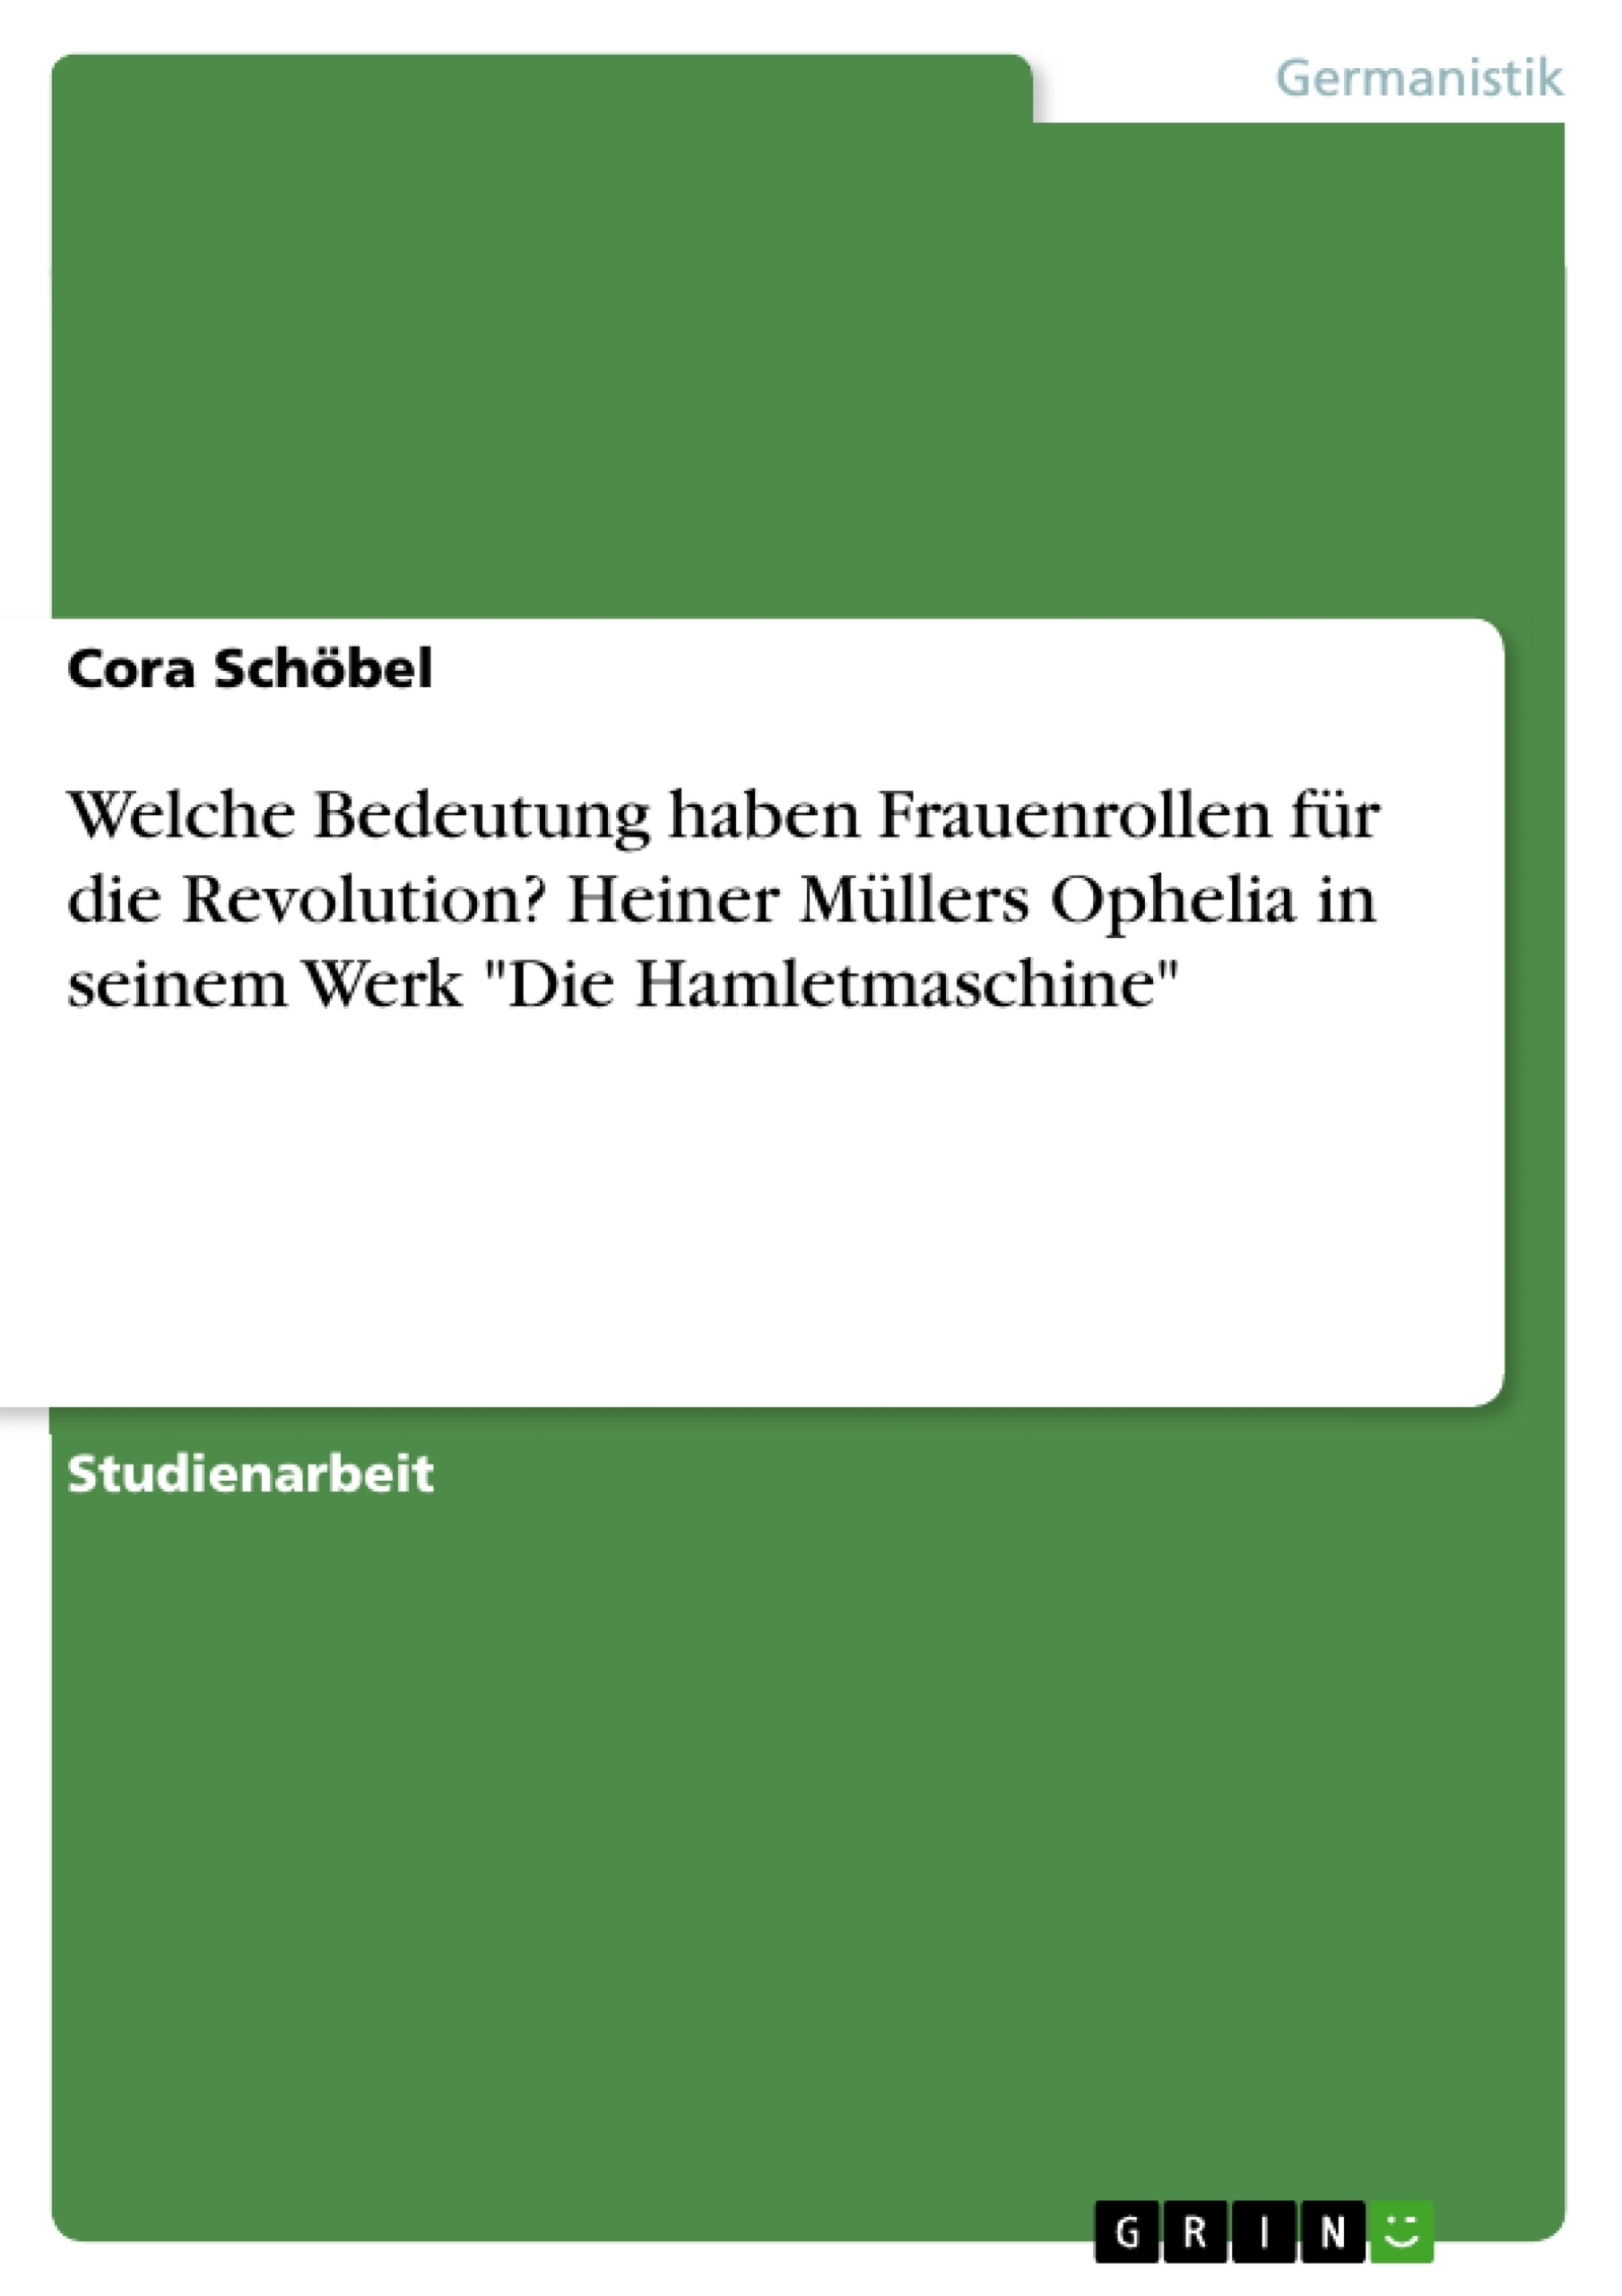 Título: Welche Bedeutung haben Frauenrollen für die Revolution? Heiner Müllers Ophelia in seinem Werk "Die Hamletmaschine"